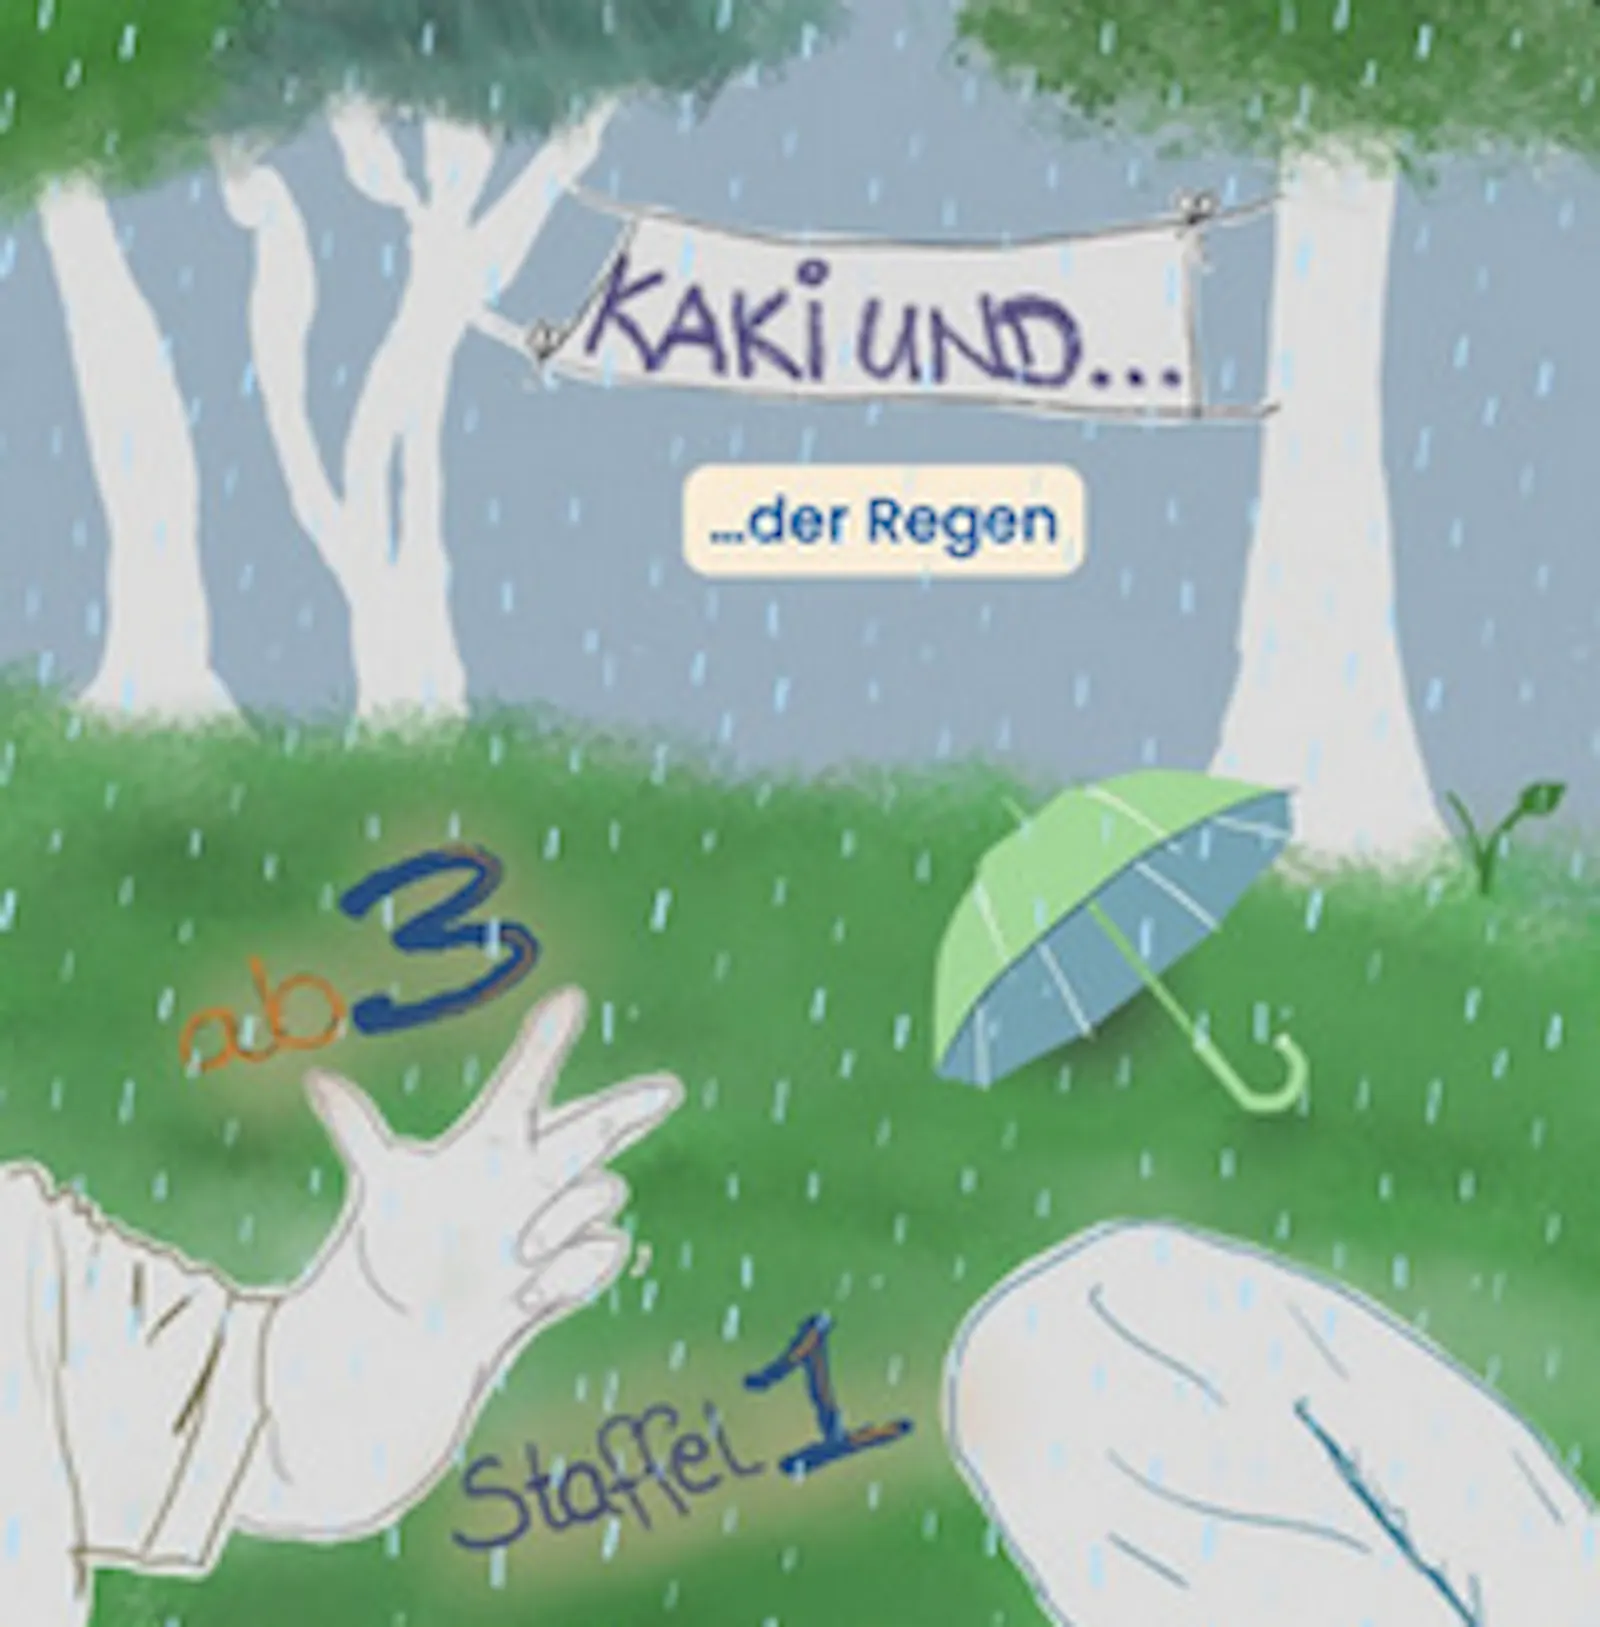 Cover der Folge "Kaki und...der Regen"
Das übliche Bild mit Bäumen im Hintergrund und einer Kinderhand und einem Hosenbein im Vordergrund ist grau voller Regentropfen. Ein Schirm liegt auf der Wiese zwischen den Bäumen.